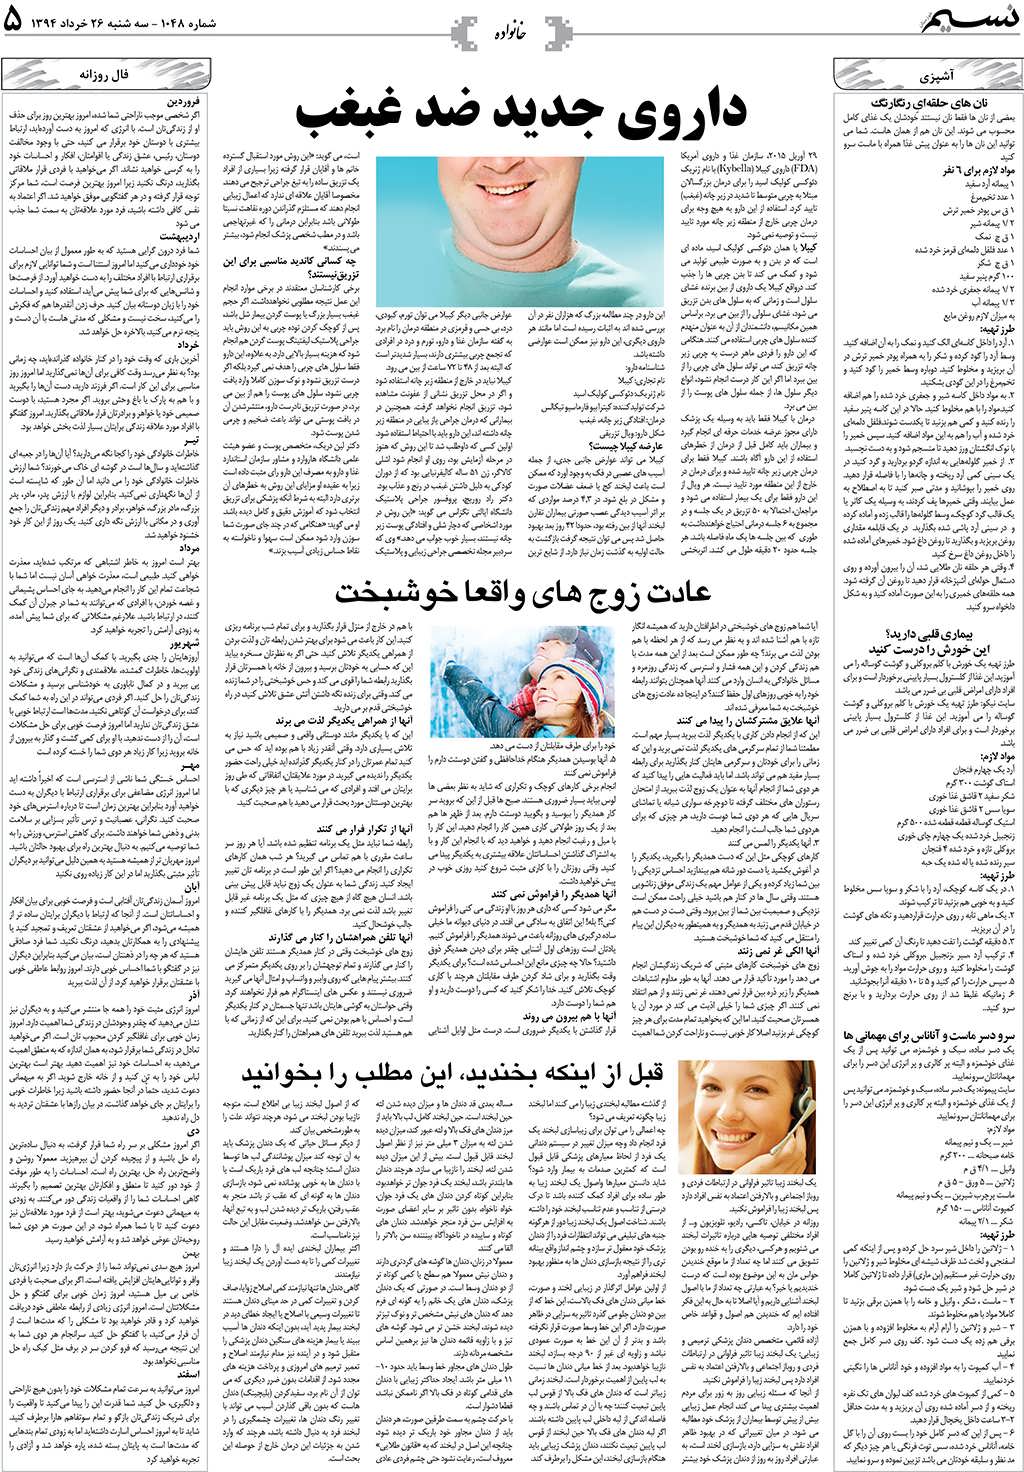 صفحه خانواده روزنامه نسیم شماره 1048